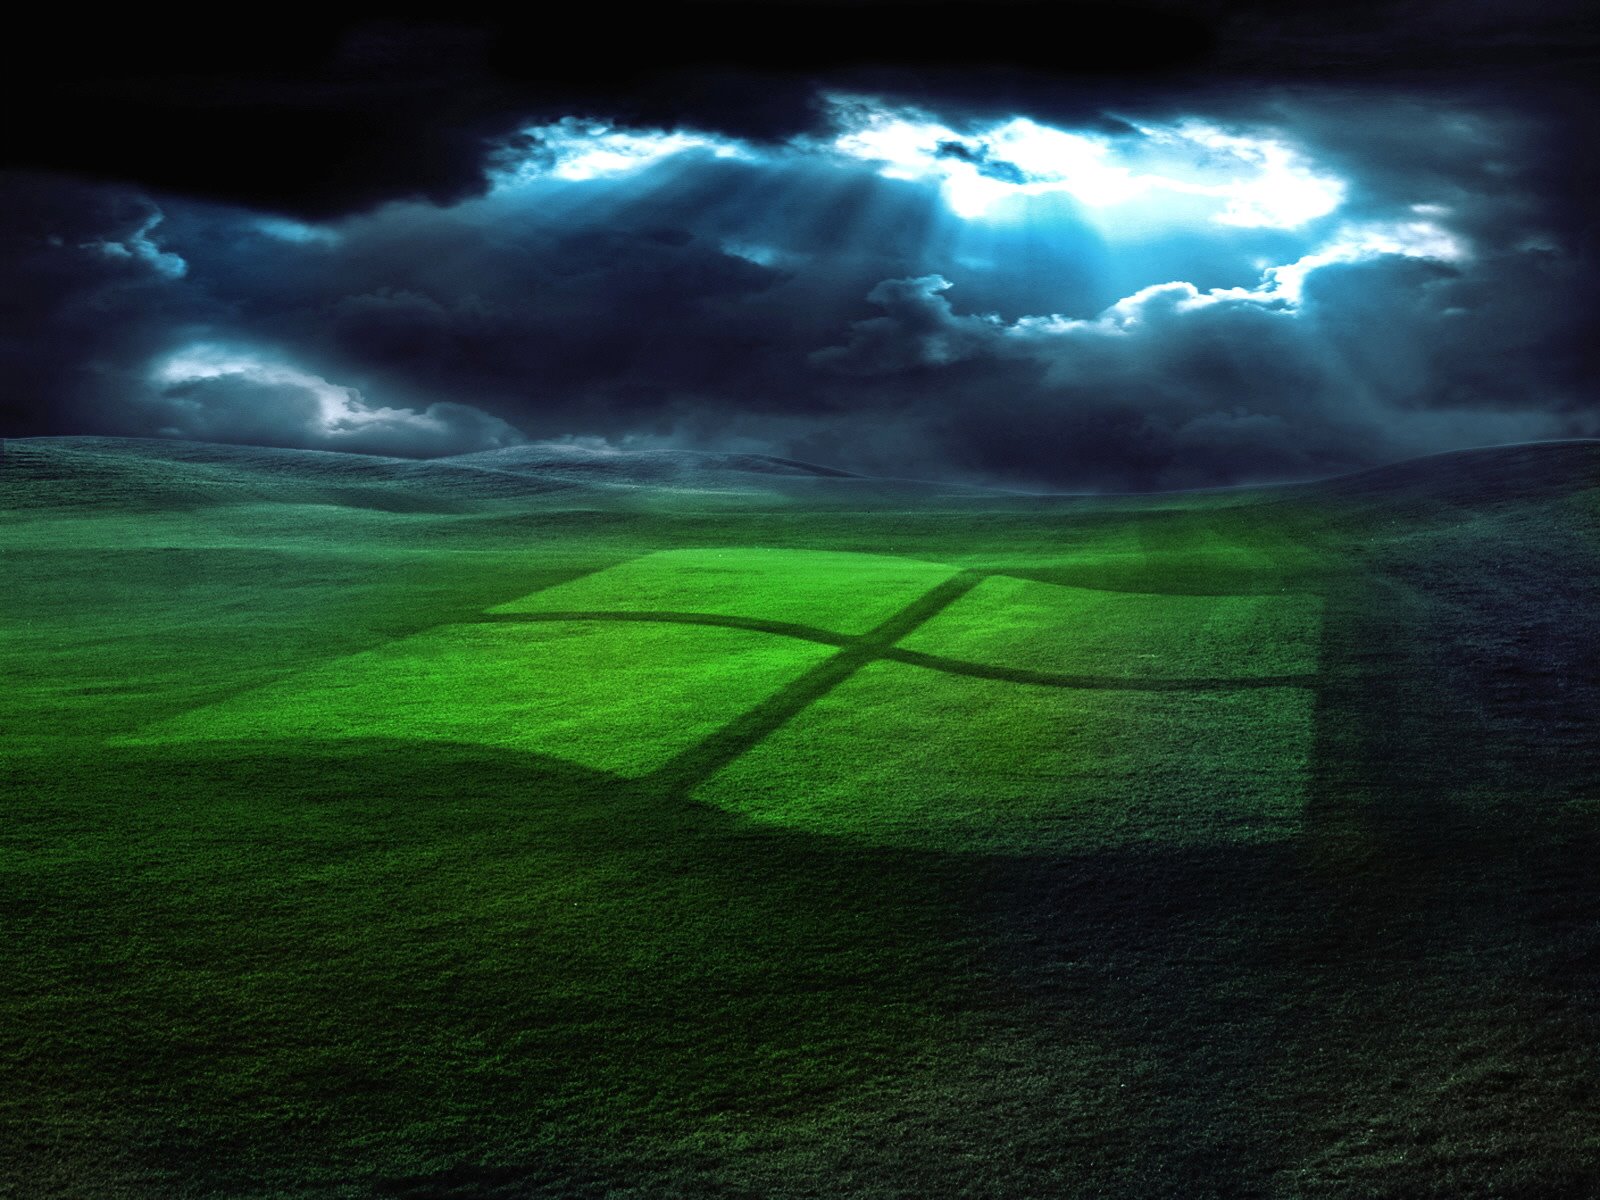 Desktop Background Puters Windows Xp In Storm